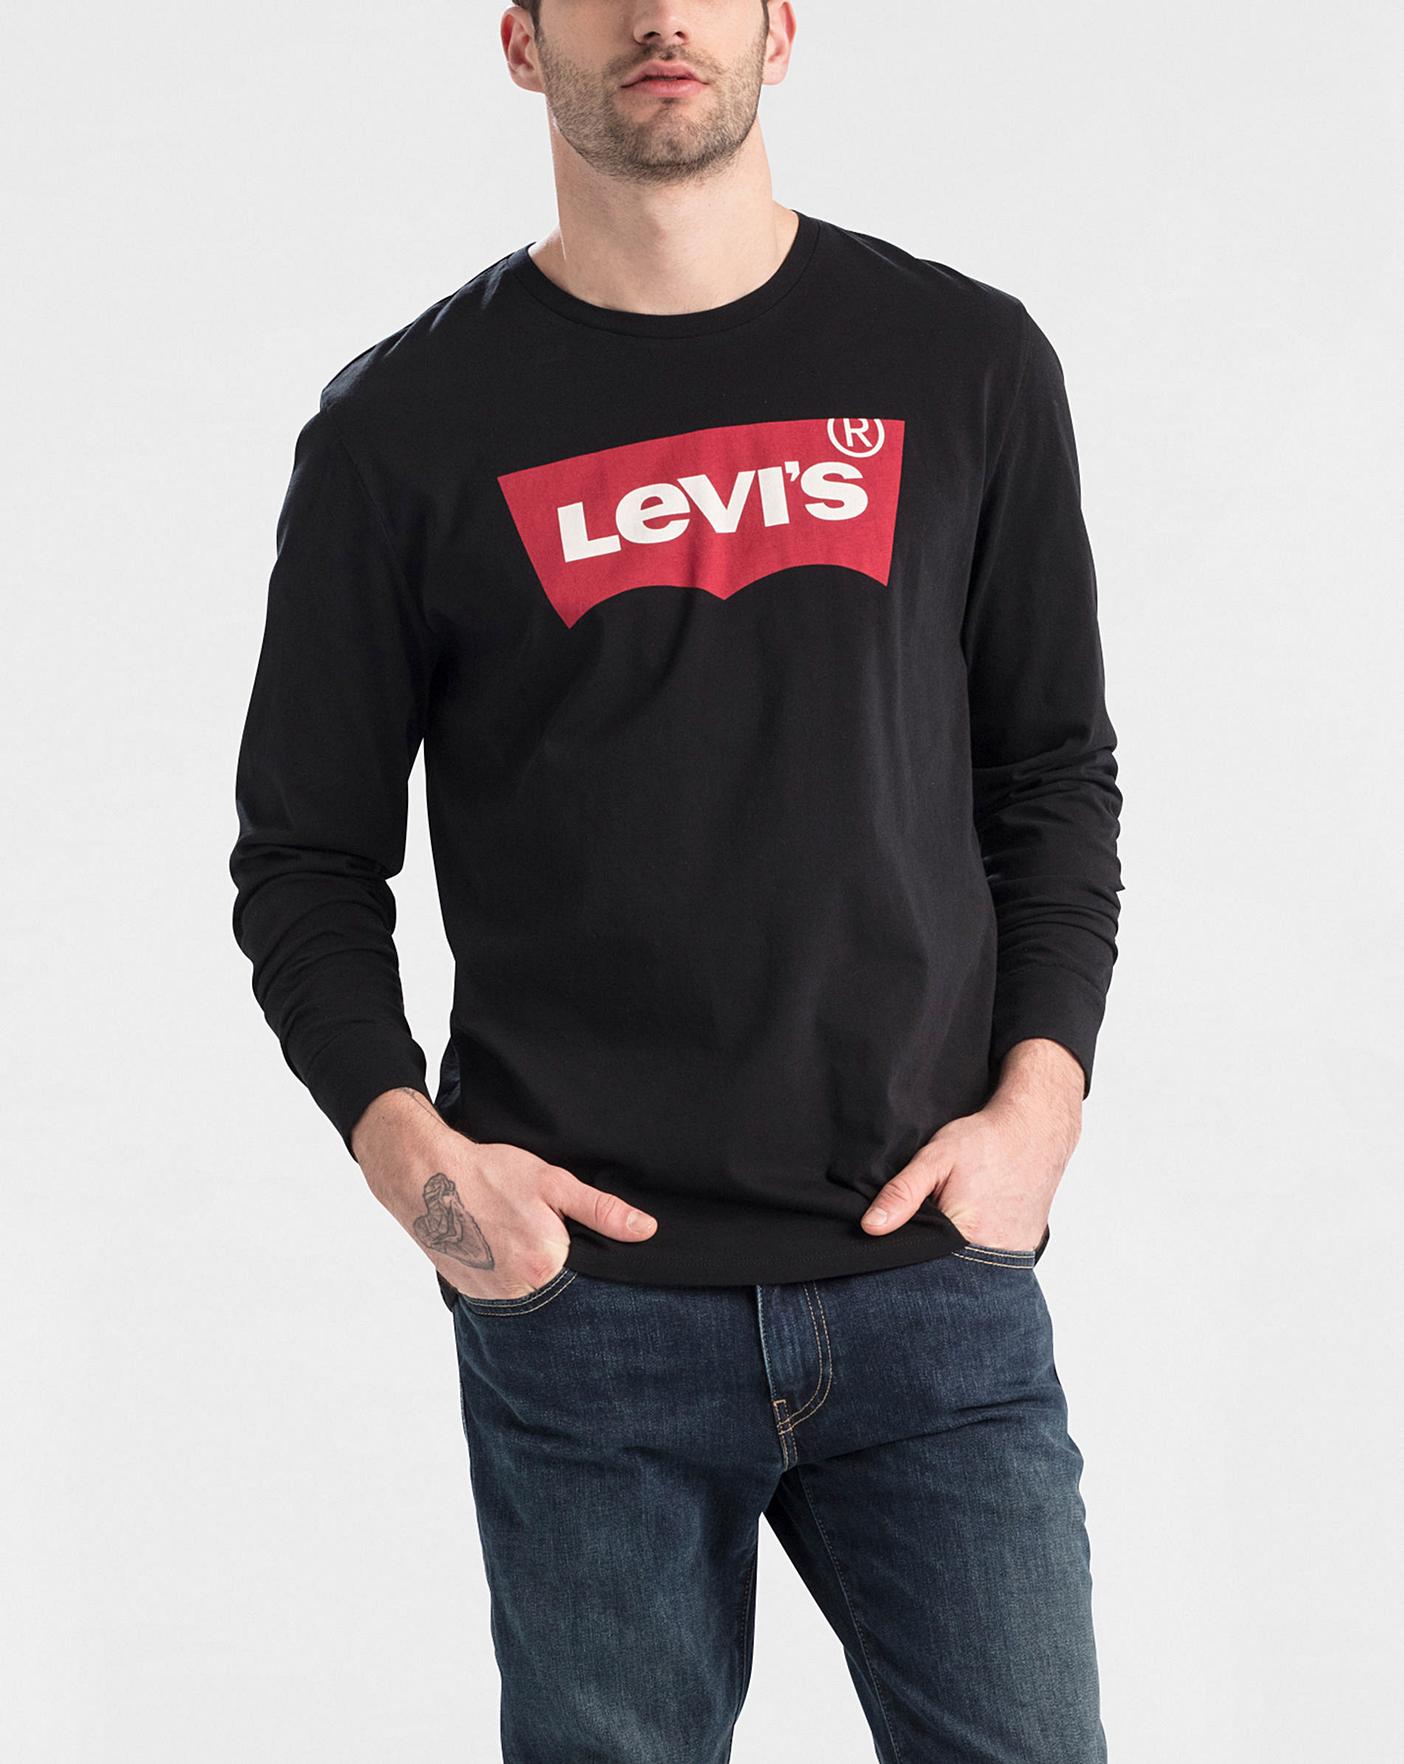 levis t shirt long sleeve